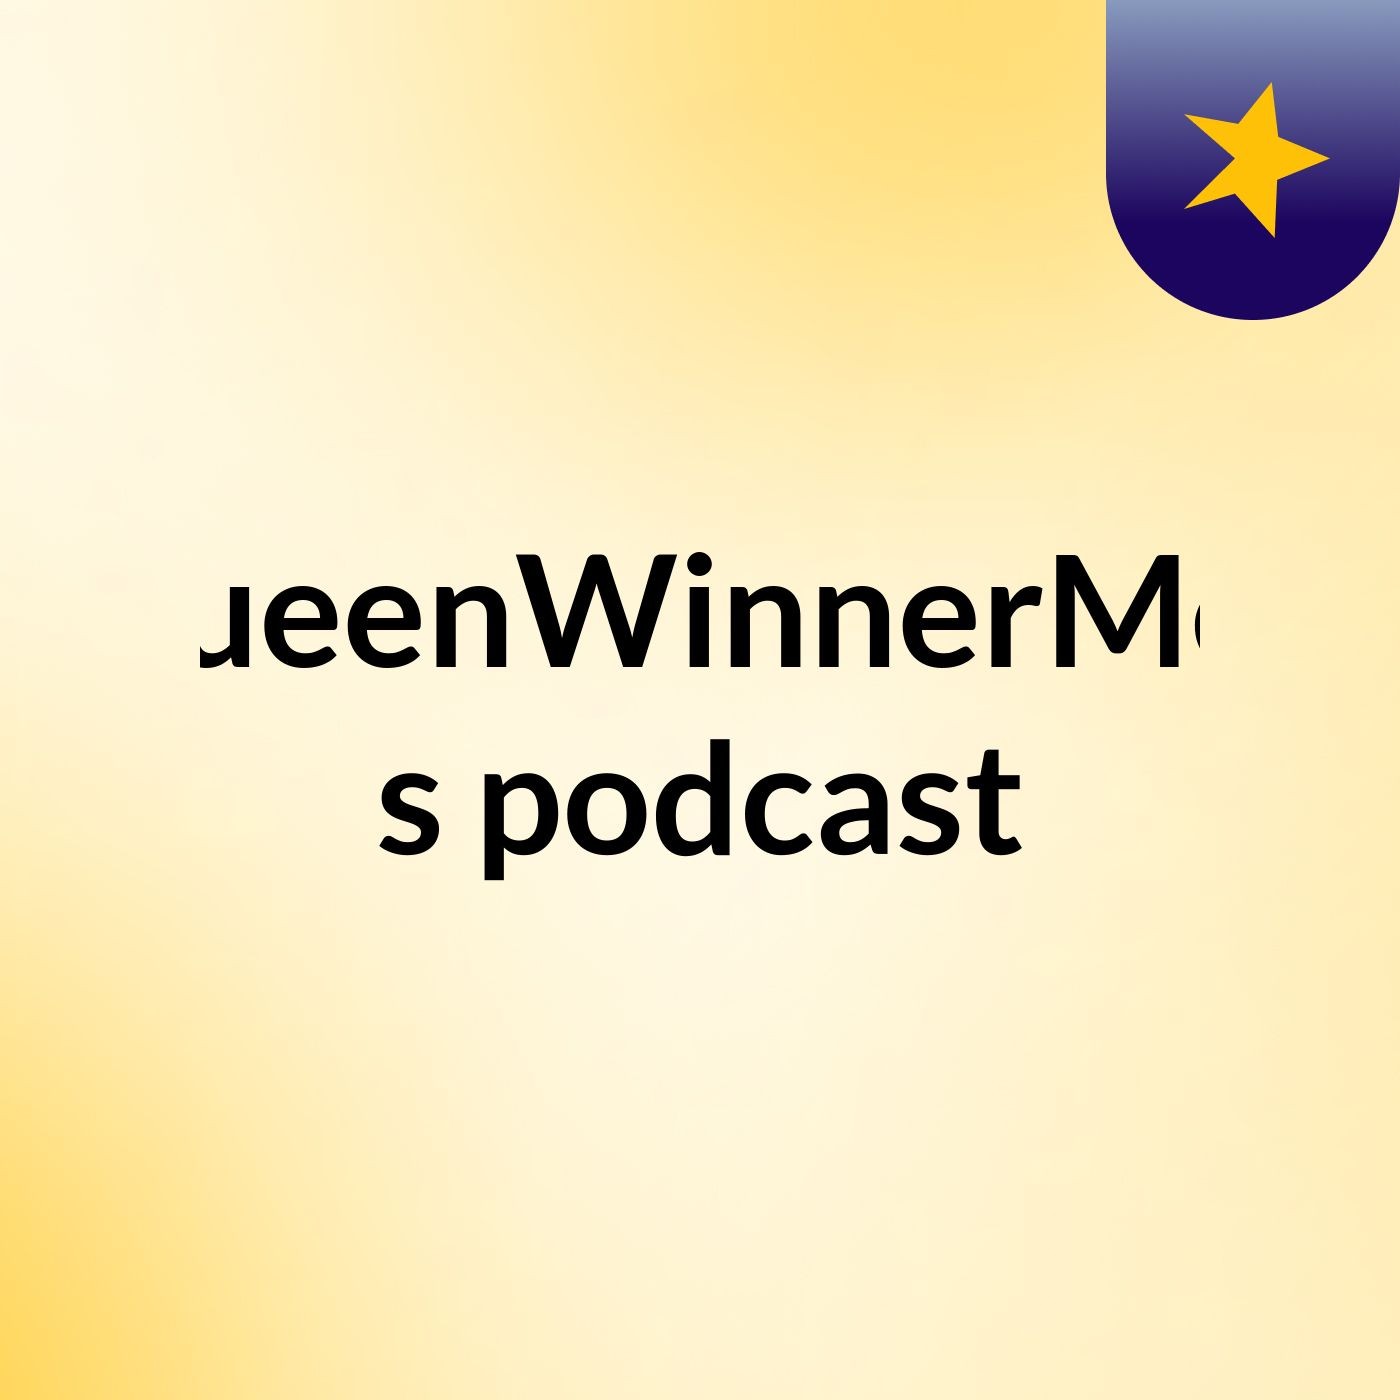 Episode 2 - QueenWinnerMea's podcast